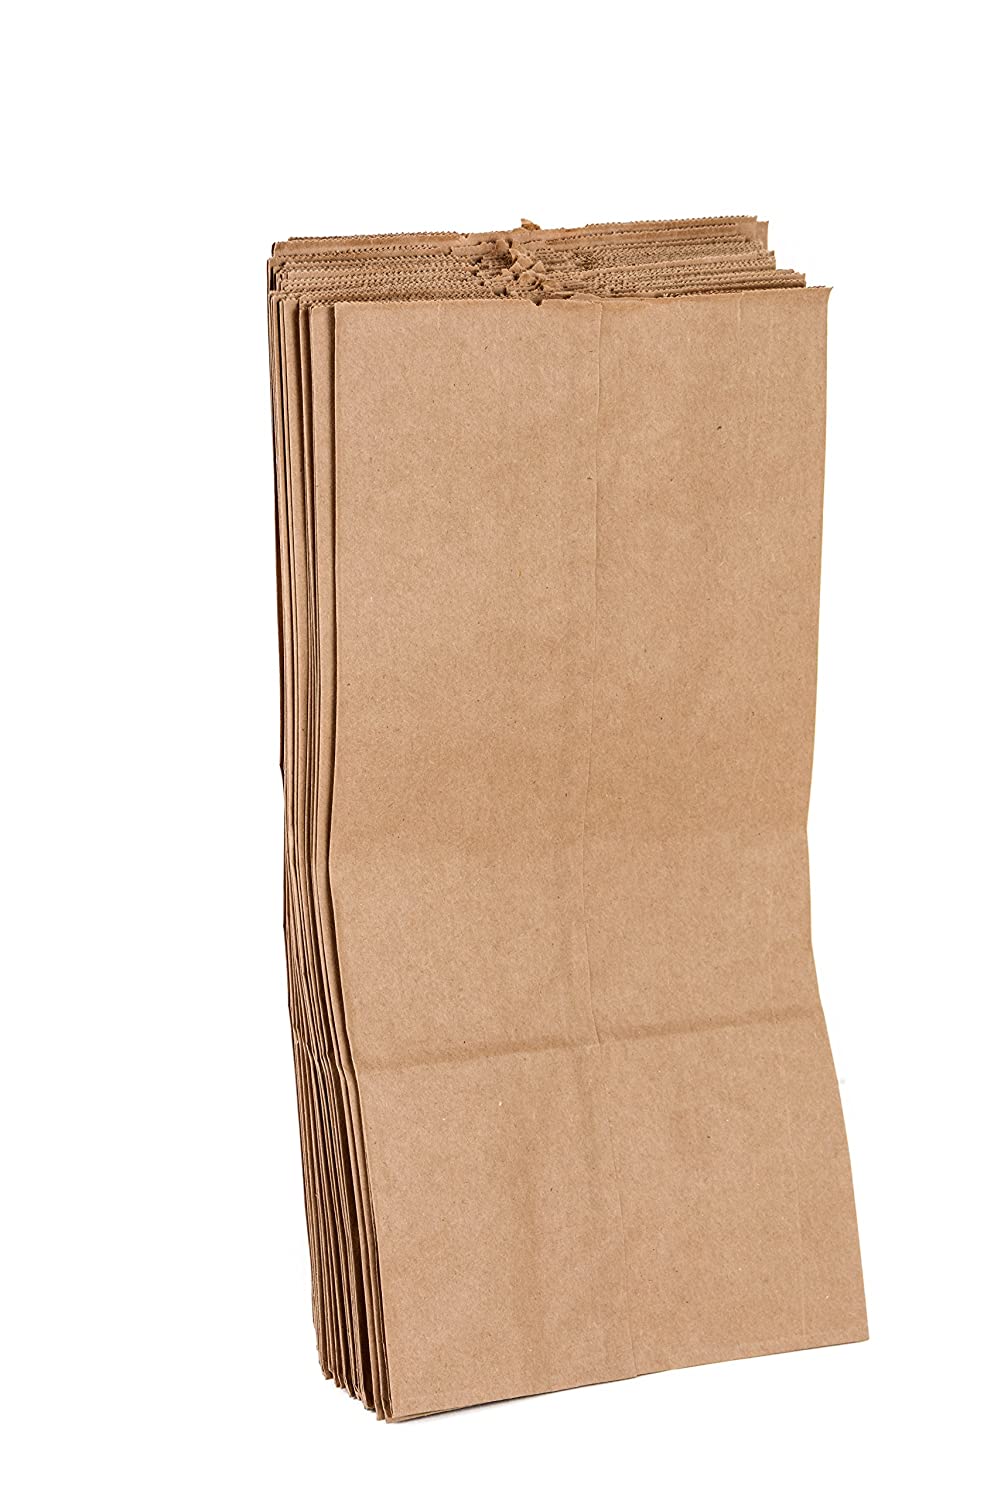 1/2# Brown Paper Bags 20/500